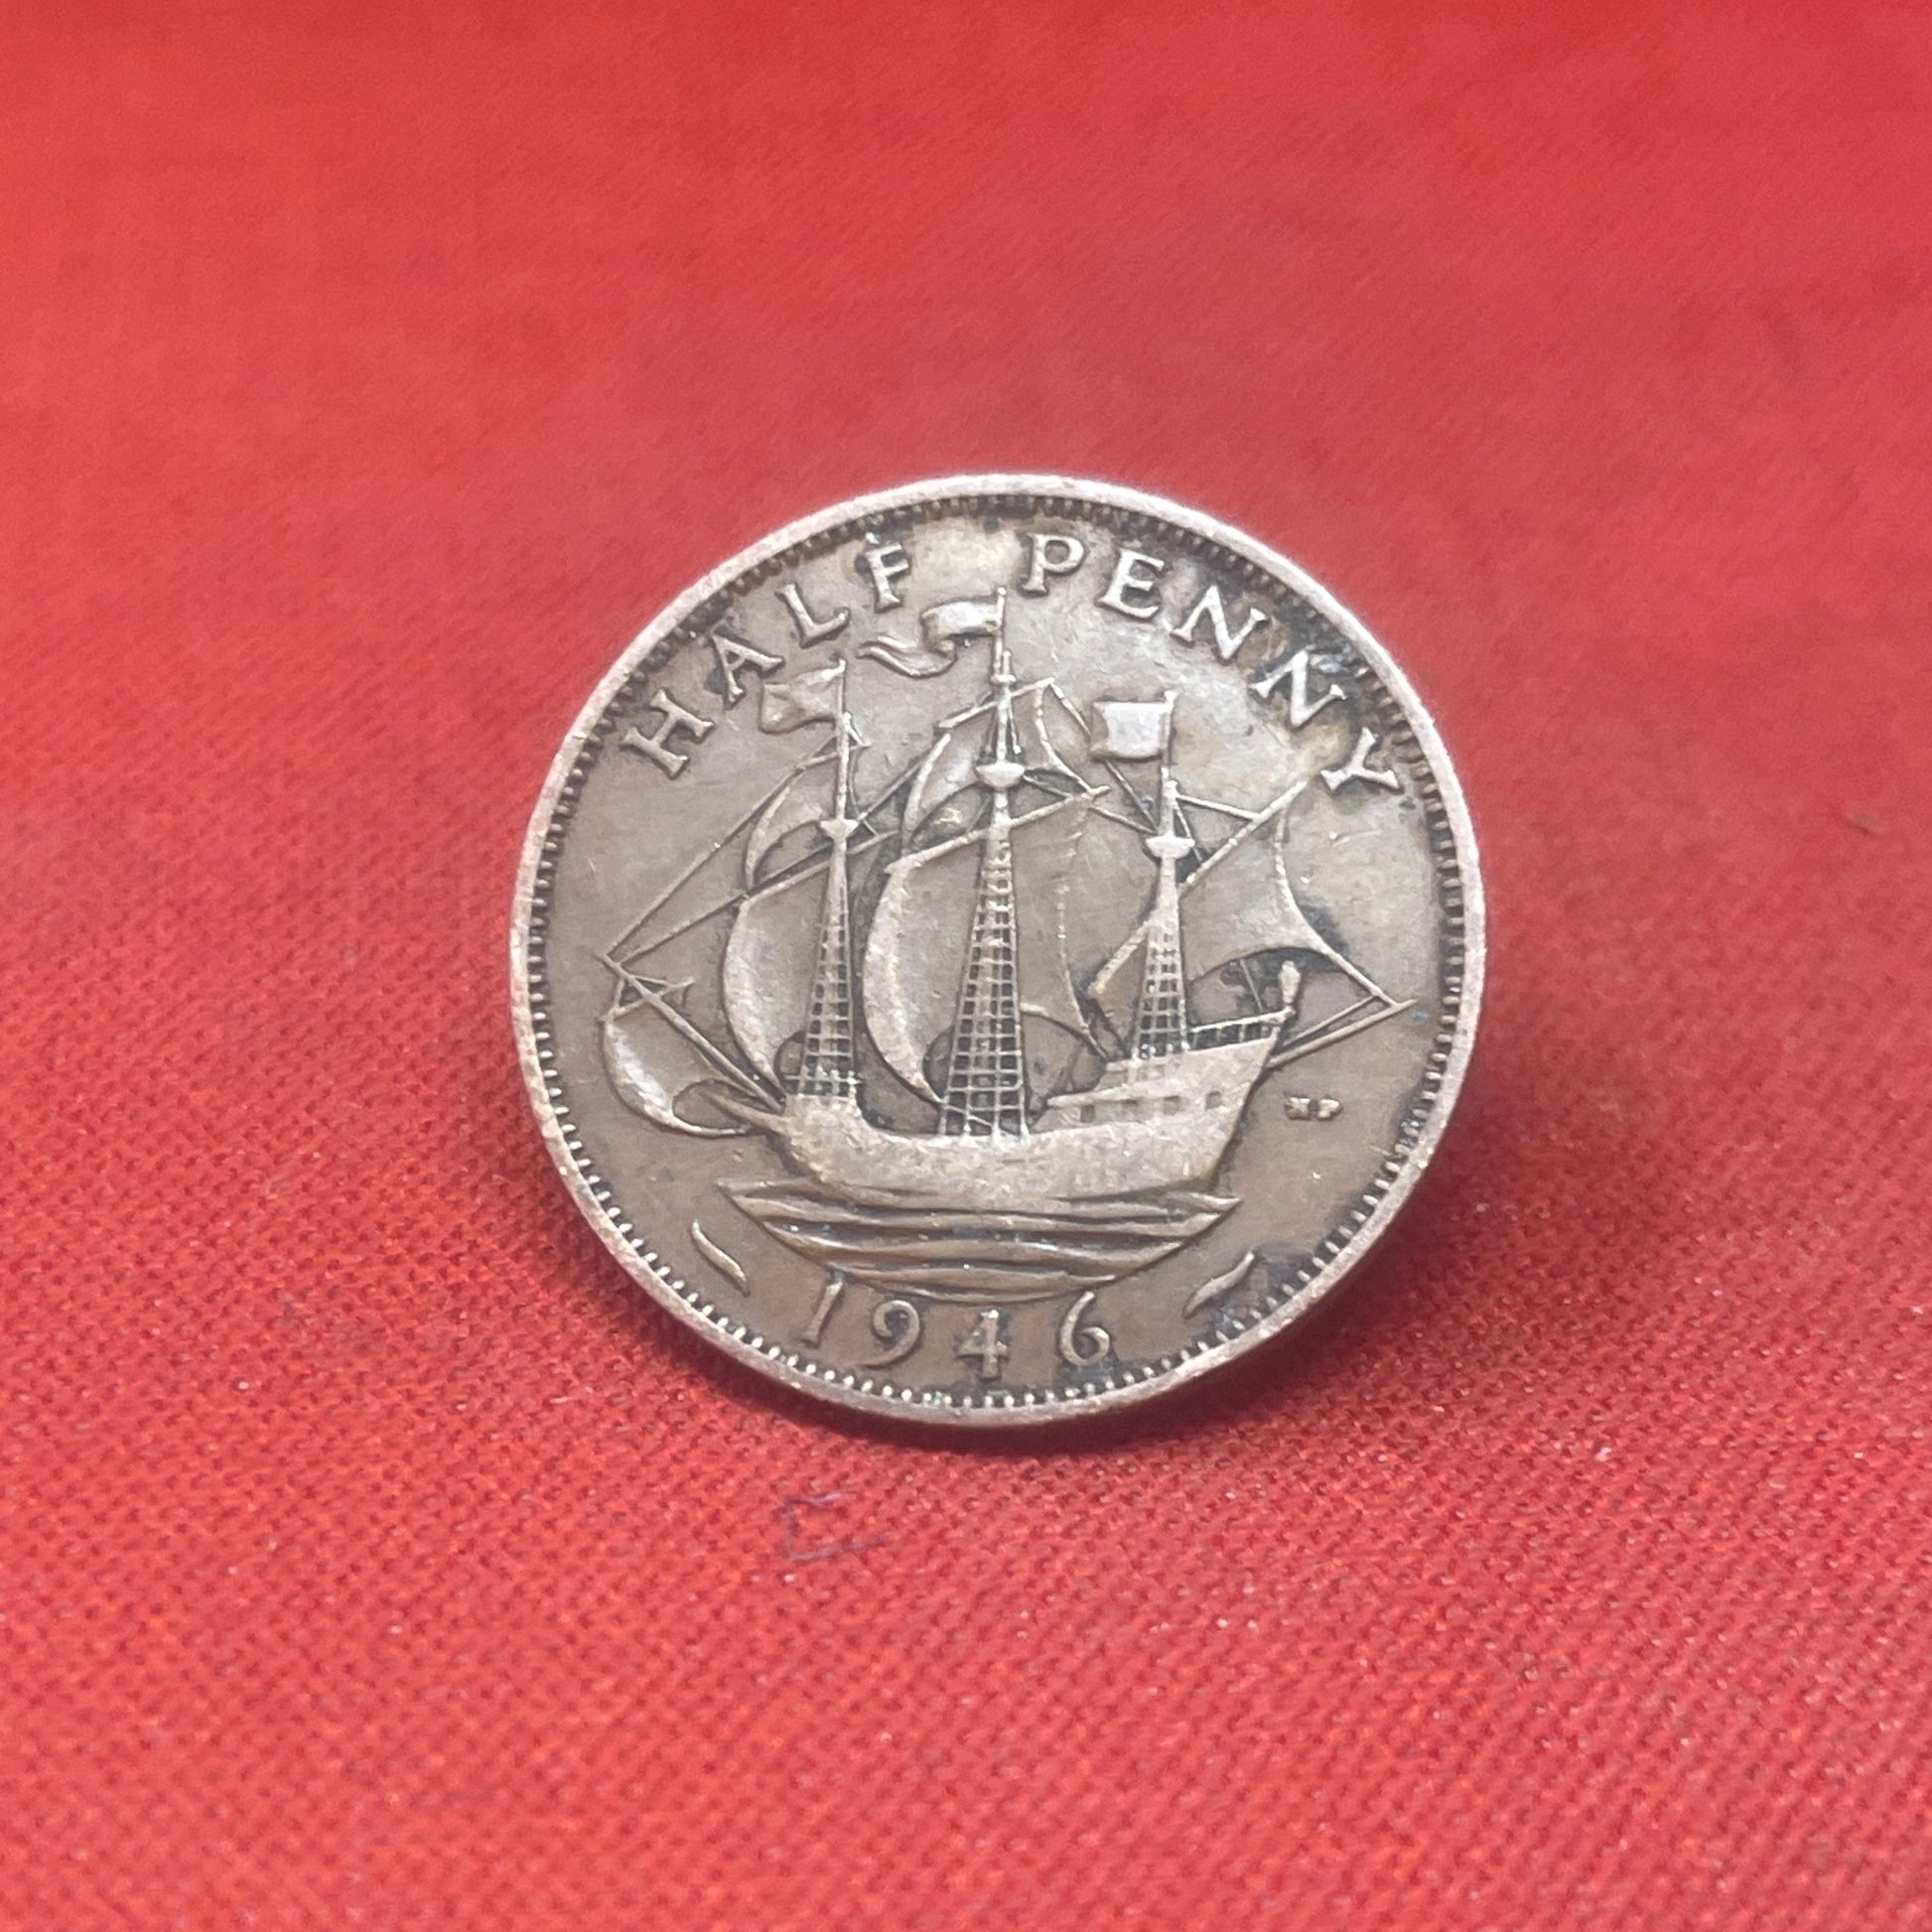 King George VI 1946 Half Penny